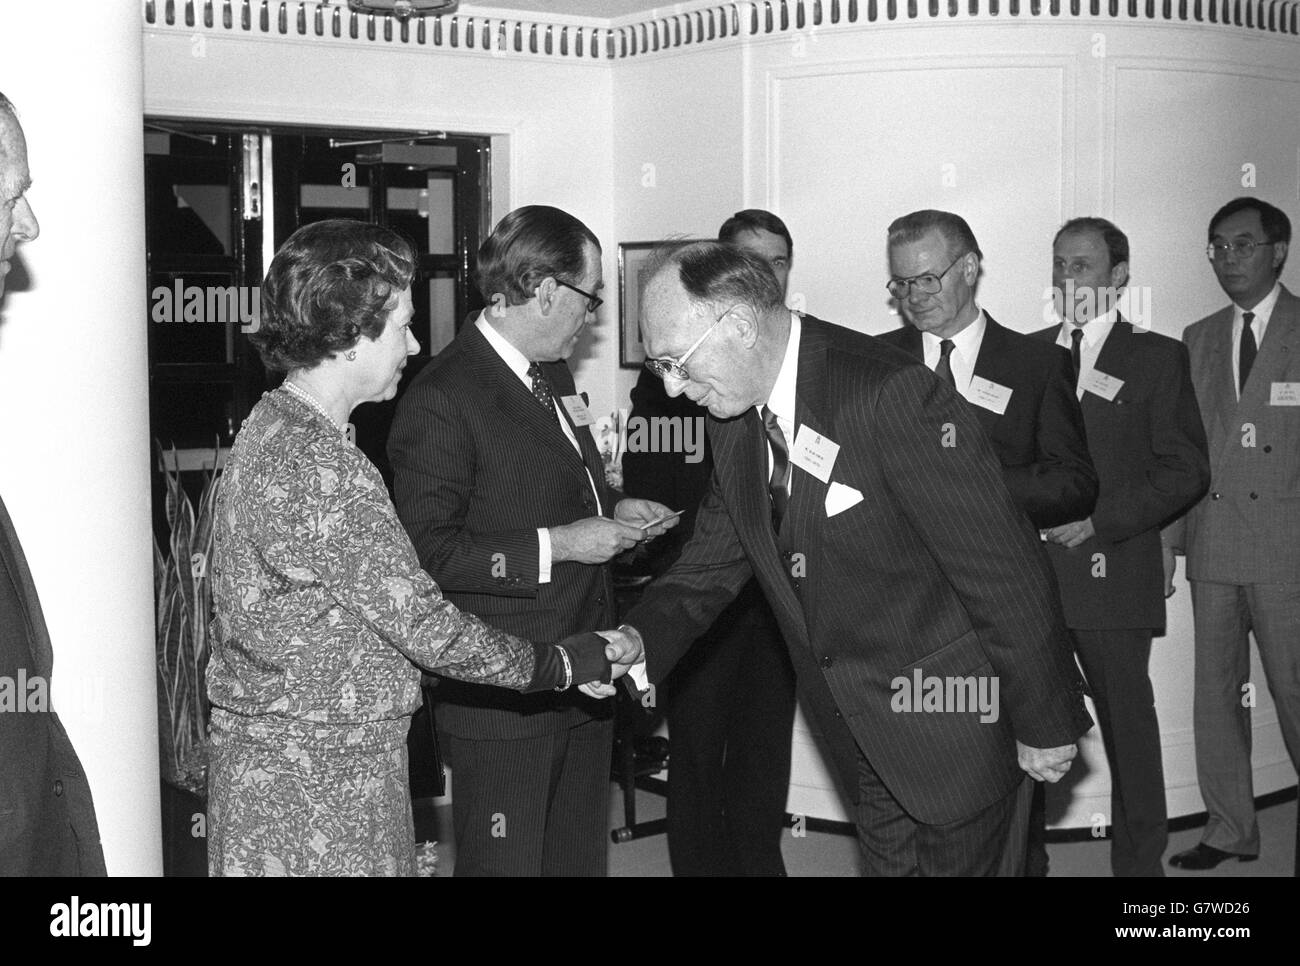 La regina Elisabetta II, guardata il duca di Edimburgo, incontra i vincitori del Queen's Award 1988 per l'industria per l'esportazione e la tecnologia, a bordo della Britannia. Accanto alla Regina, l'ammiraglio posteriore Sir Paul Greening, Maestro della Casa, legge i nomi. Foto Stock